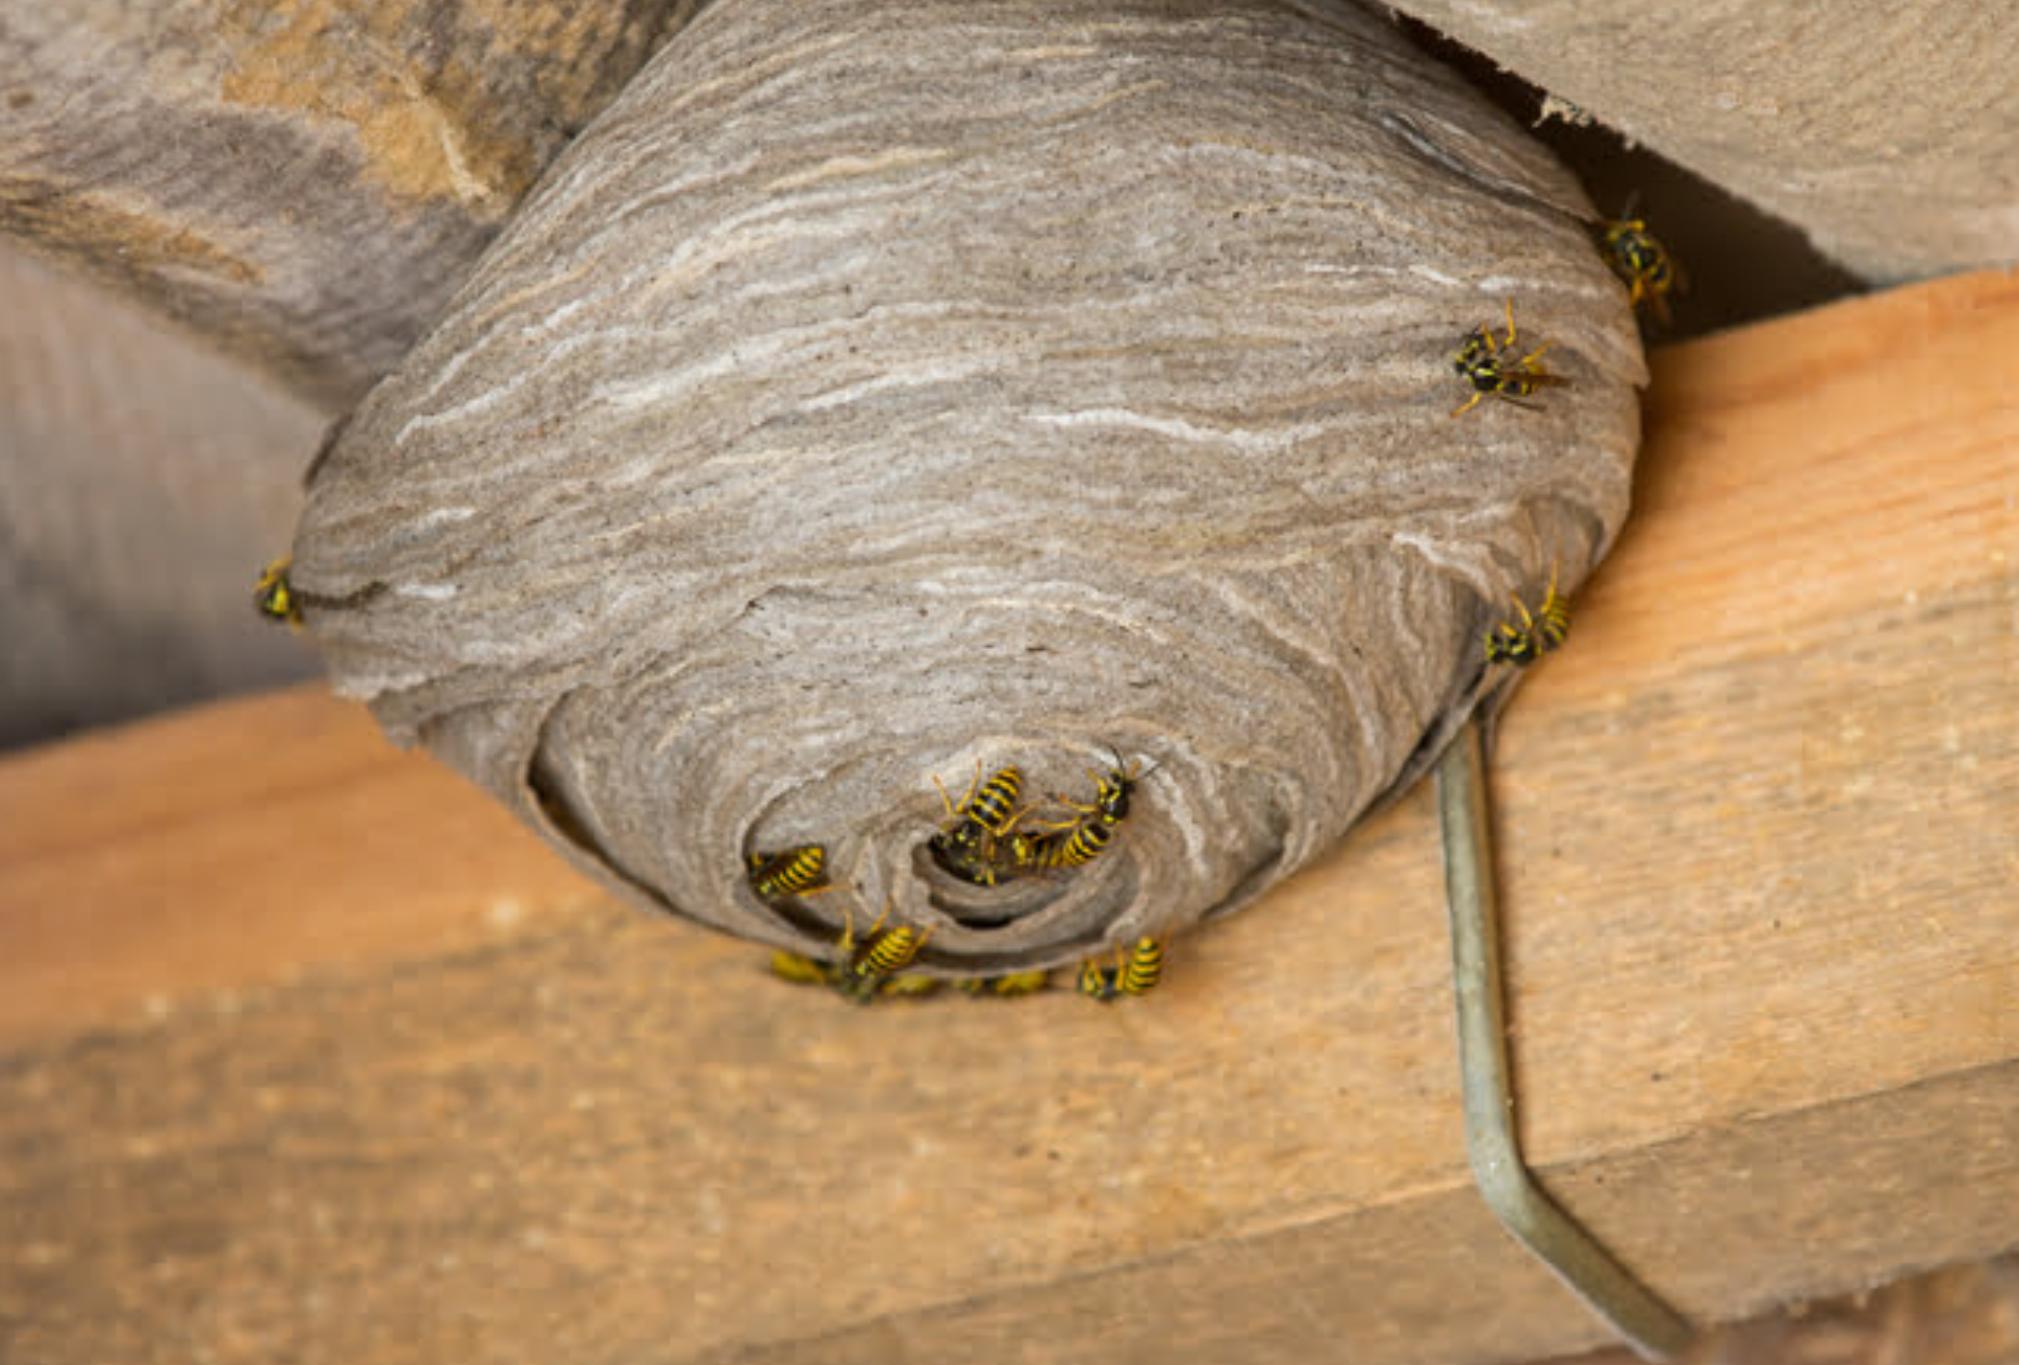 Σφήκες η φωλιά σφήκας στο σπίτι: Καταπολεμήστε οριστικά το επικίνδυνο αυτό έντομο